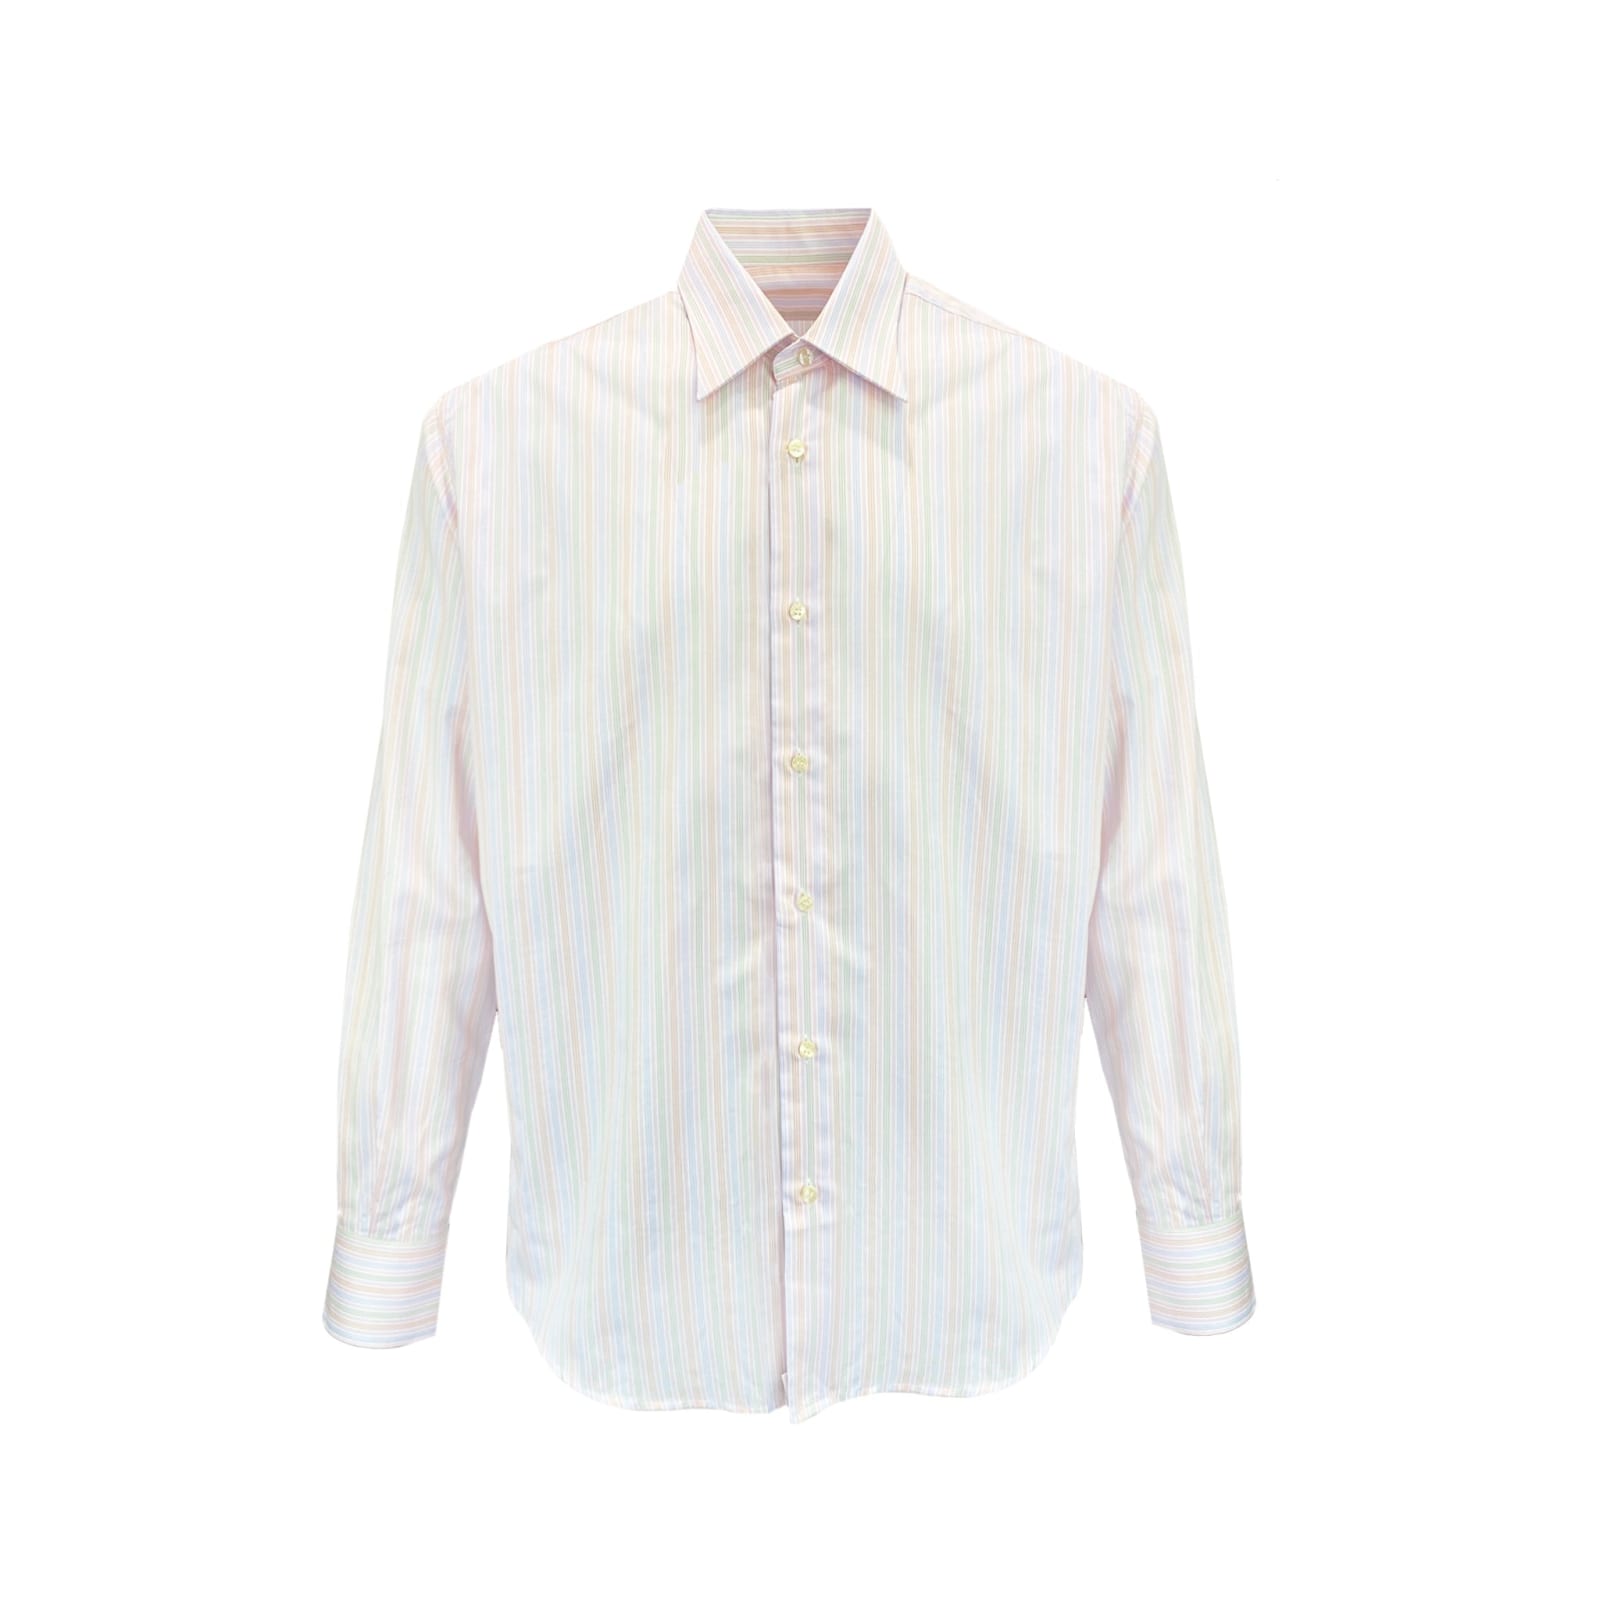 Balenciaga Striped Cotton Shirt